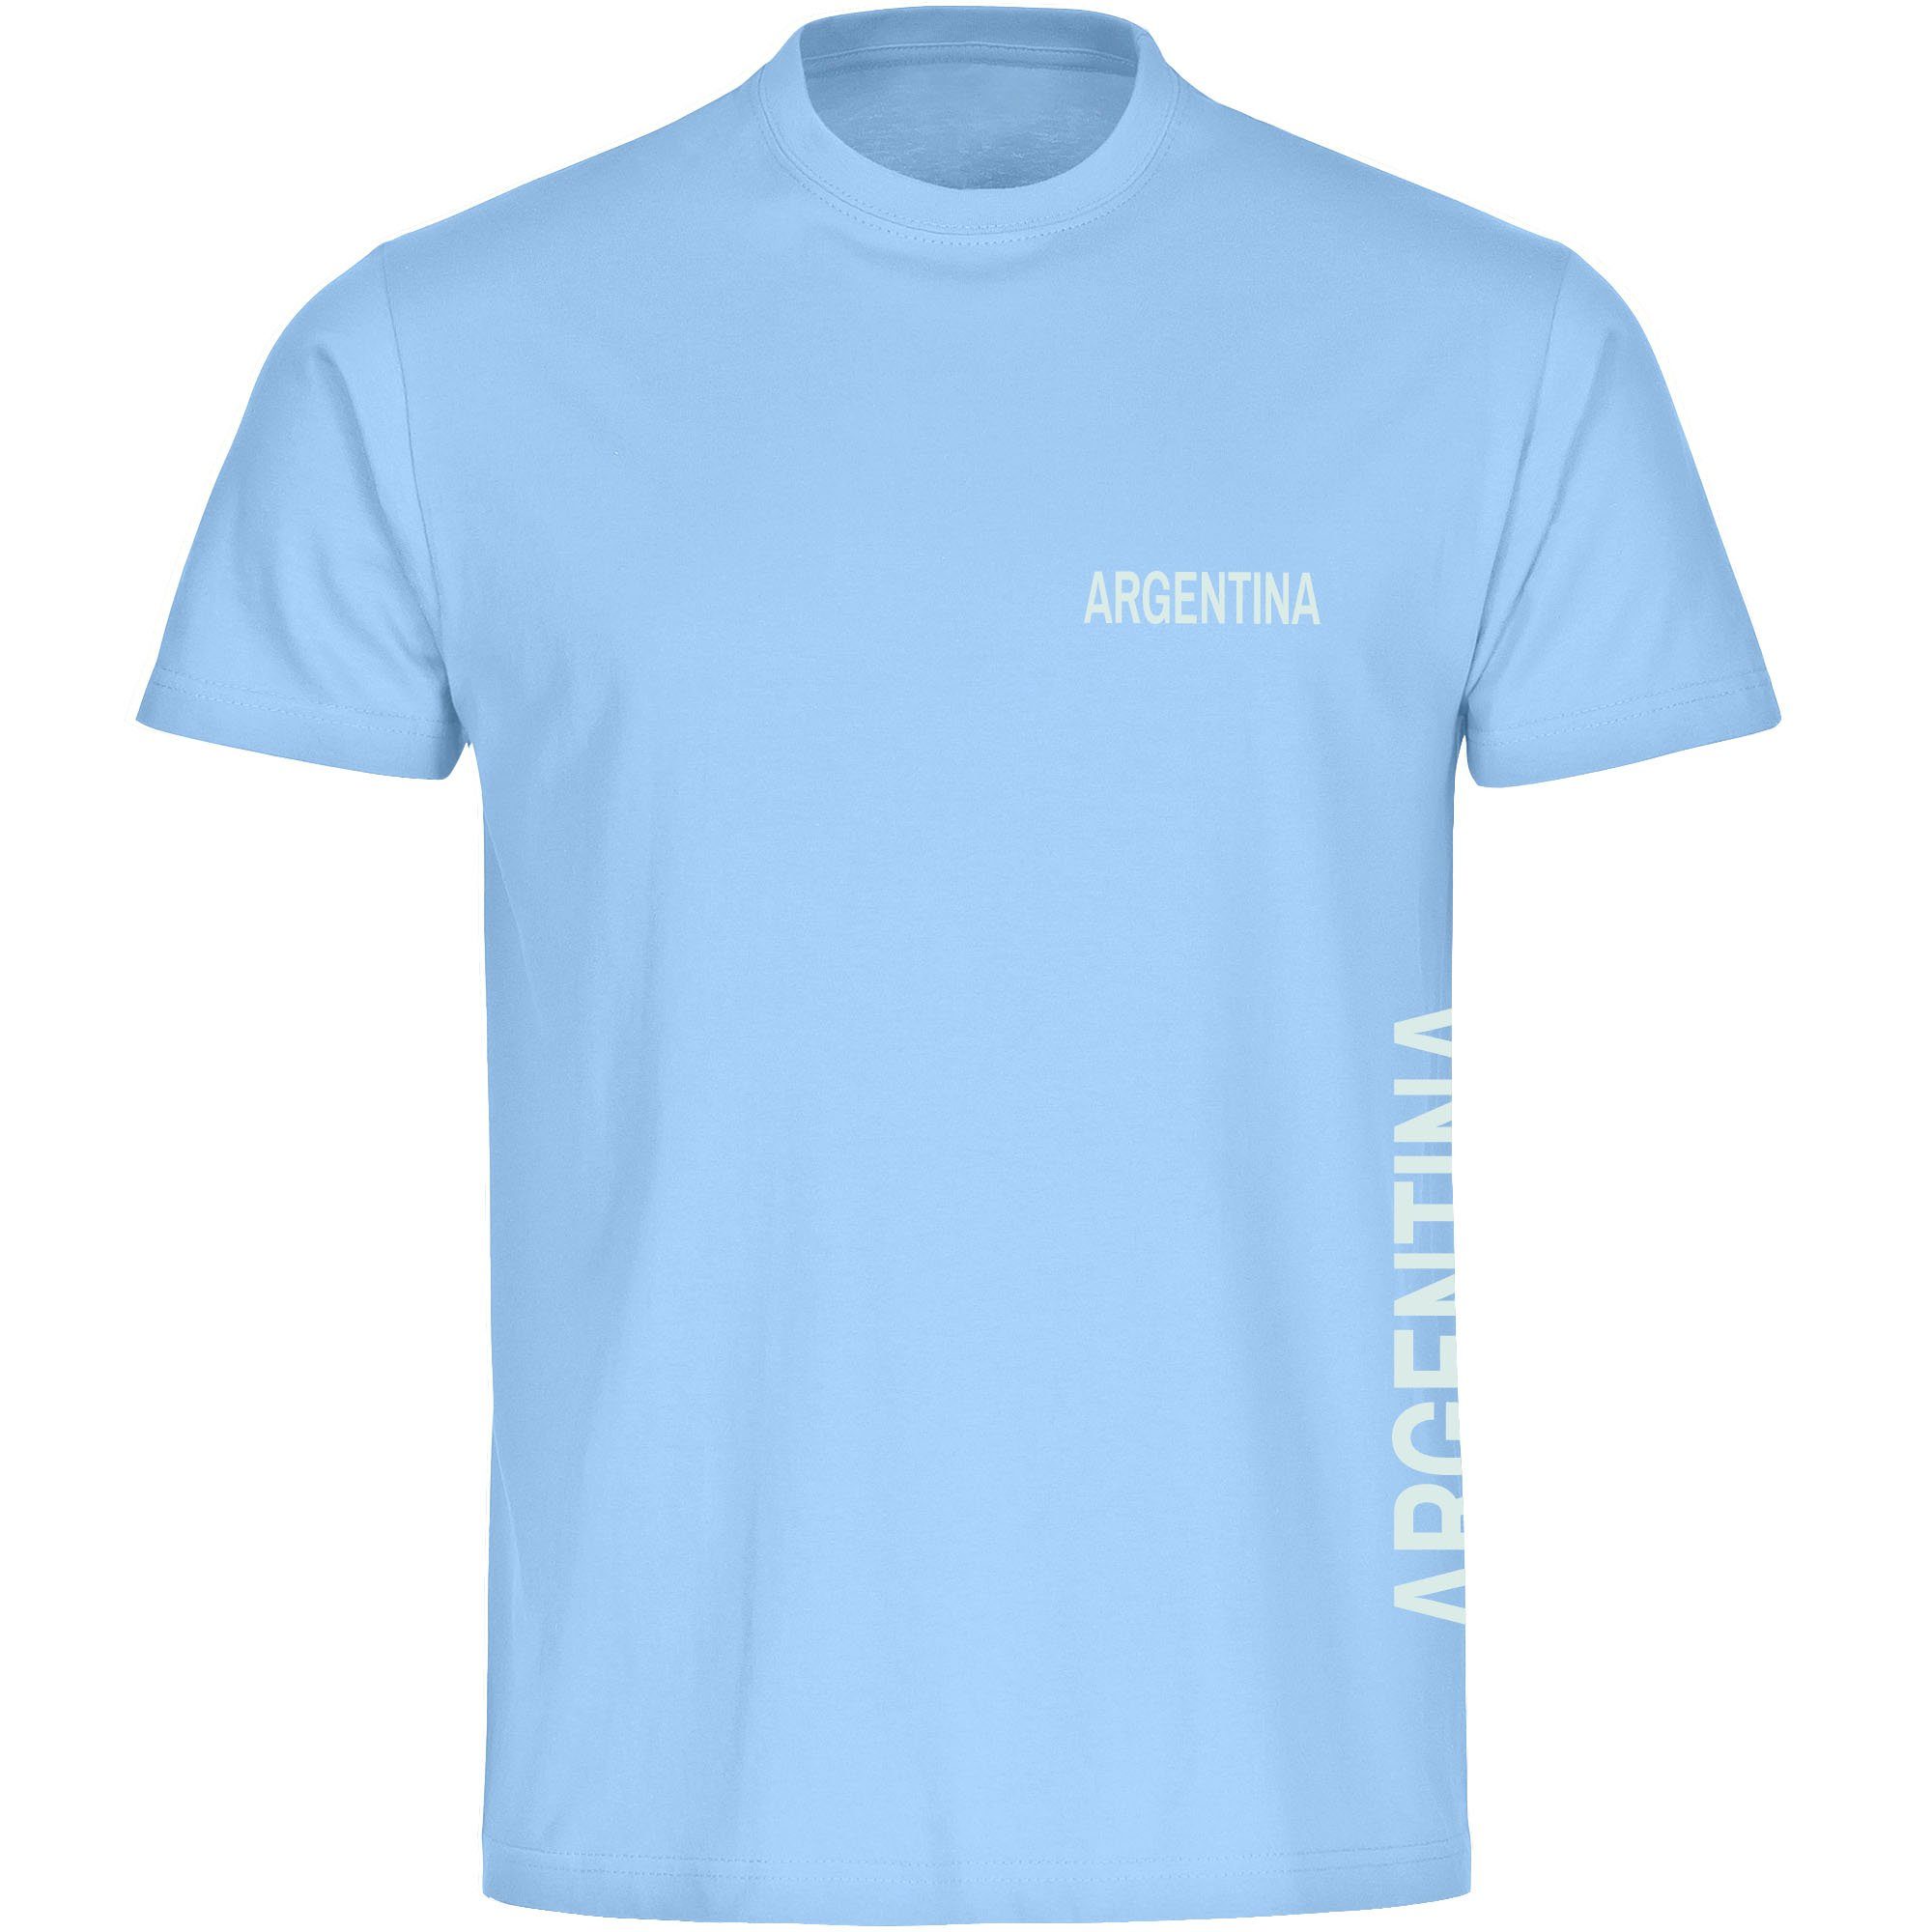 multifanshop T-Shirt Herren Argentina - Brust & Seite - Männer